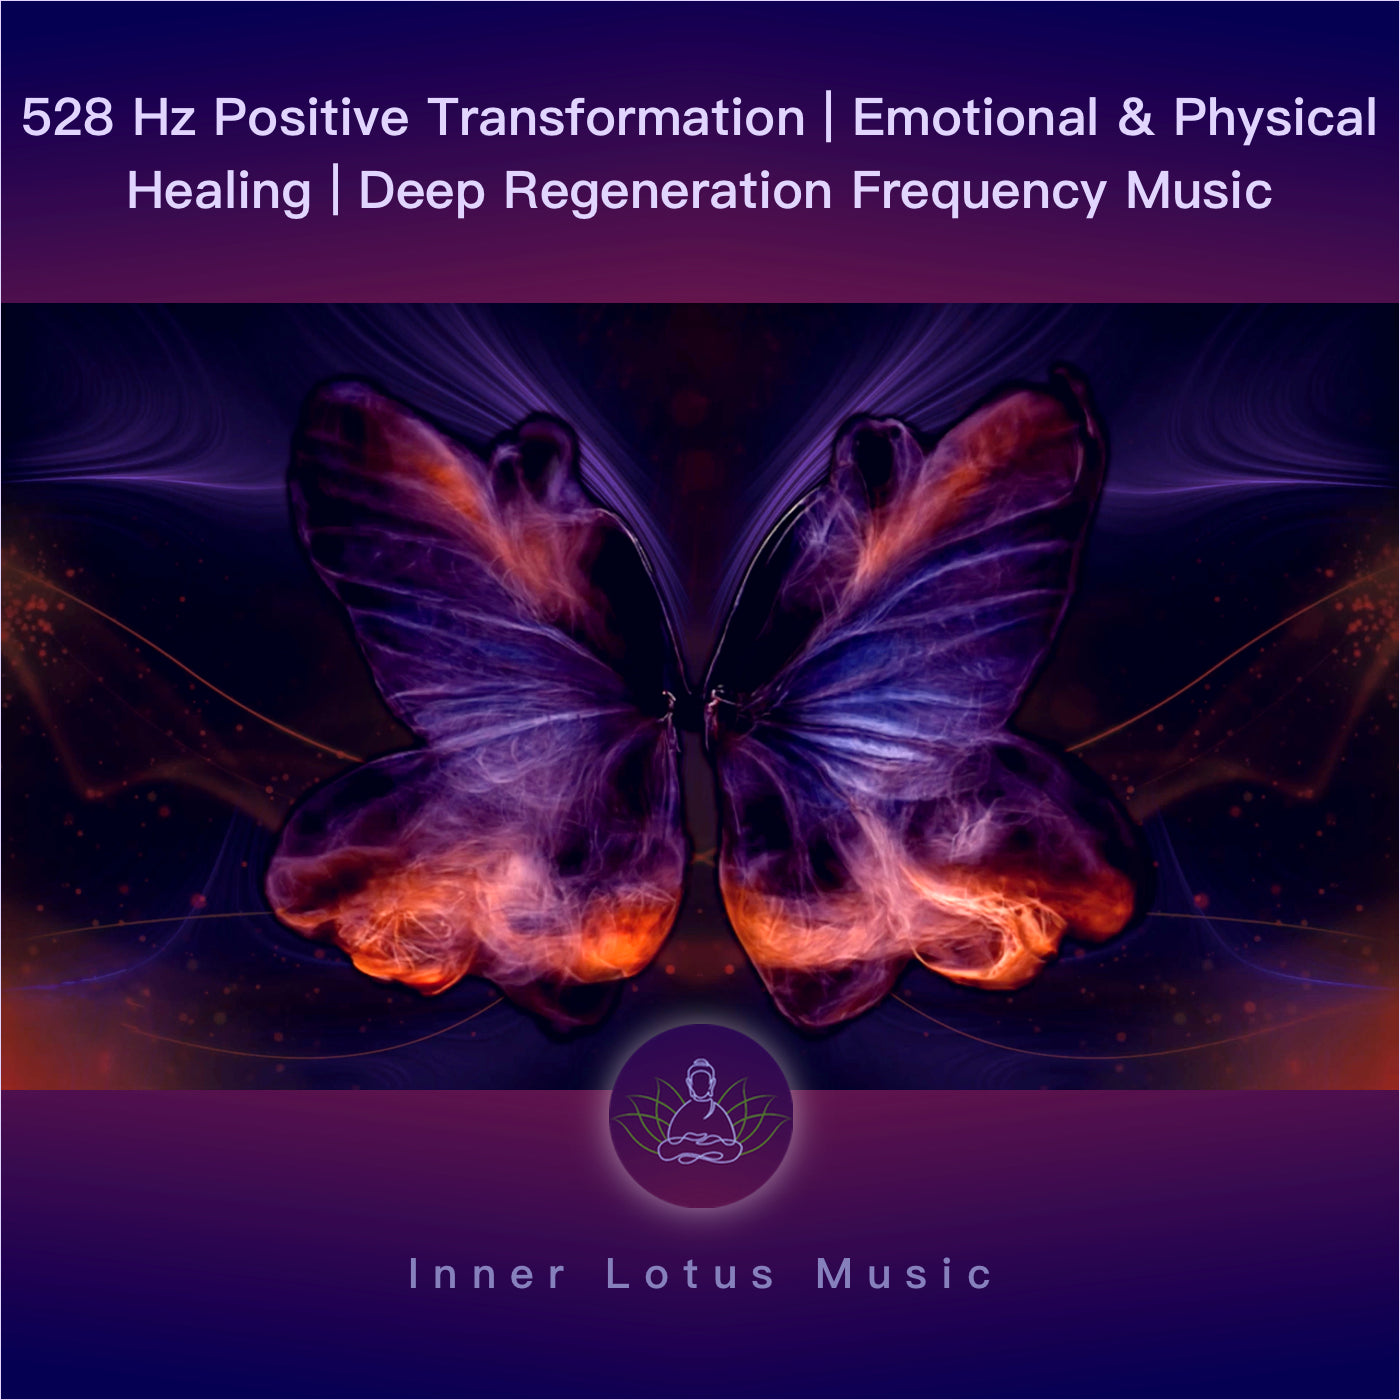 528 Hz Transformation Positive | Guérison Émotionnelle & Physique | Fréquence Régénération Profonde